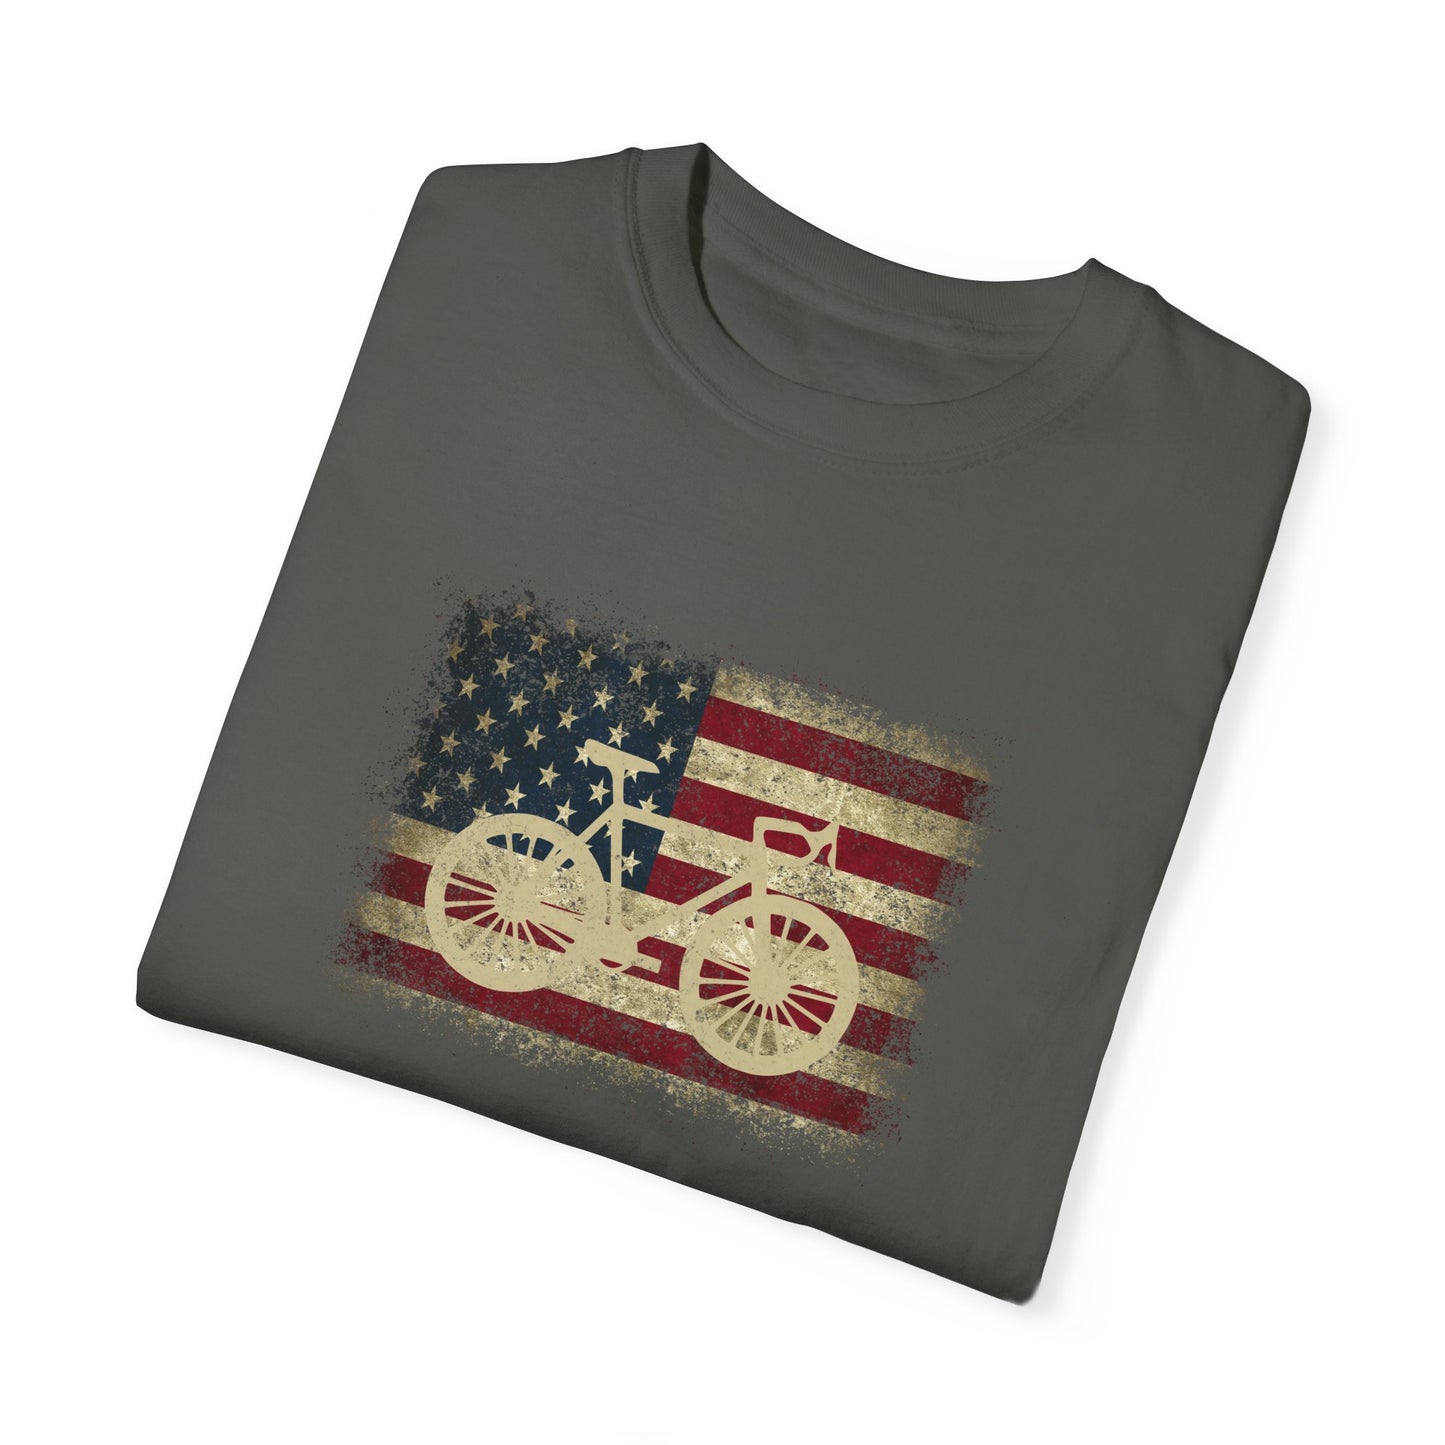 Vintage Bike American Flag Grunge T-Shirt for Men